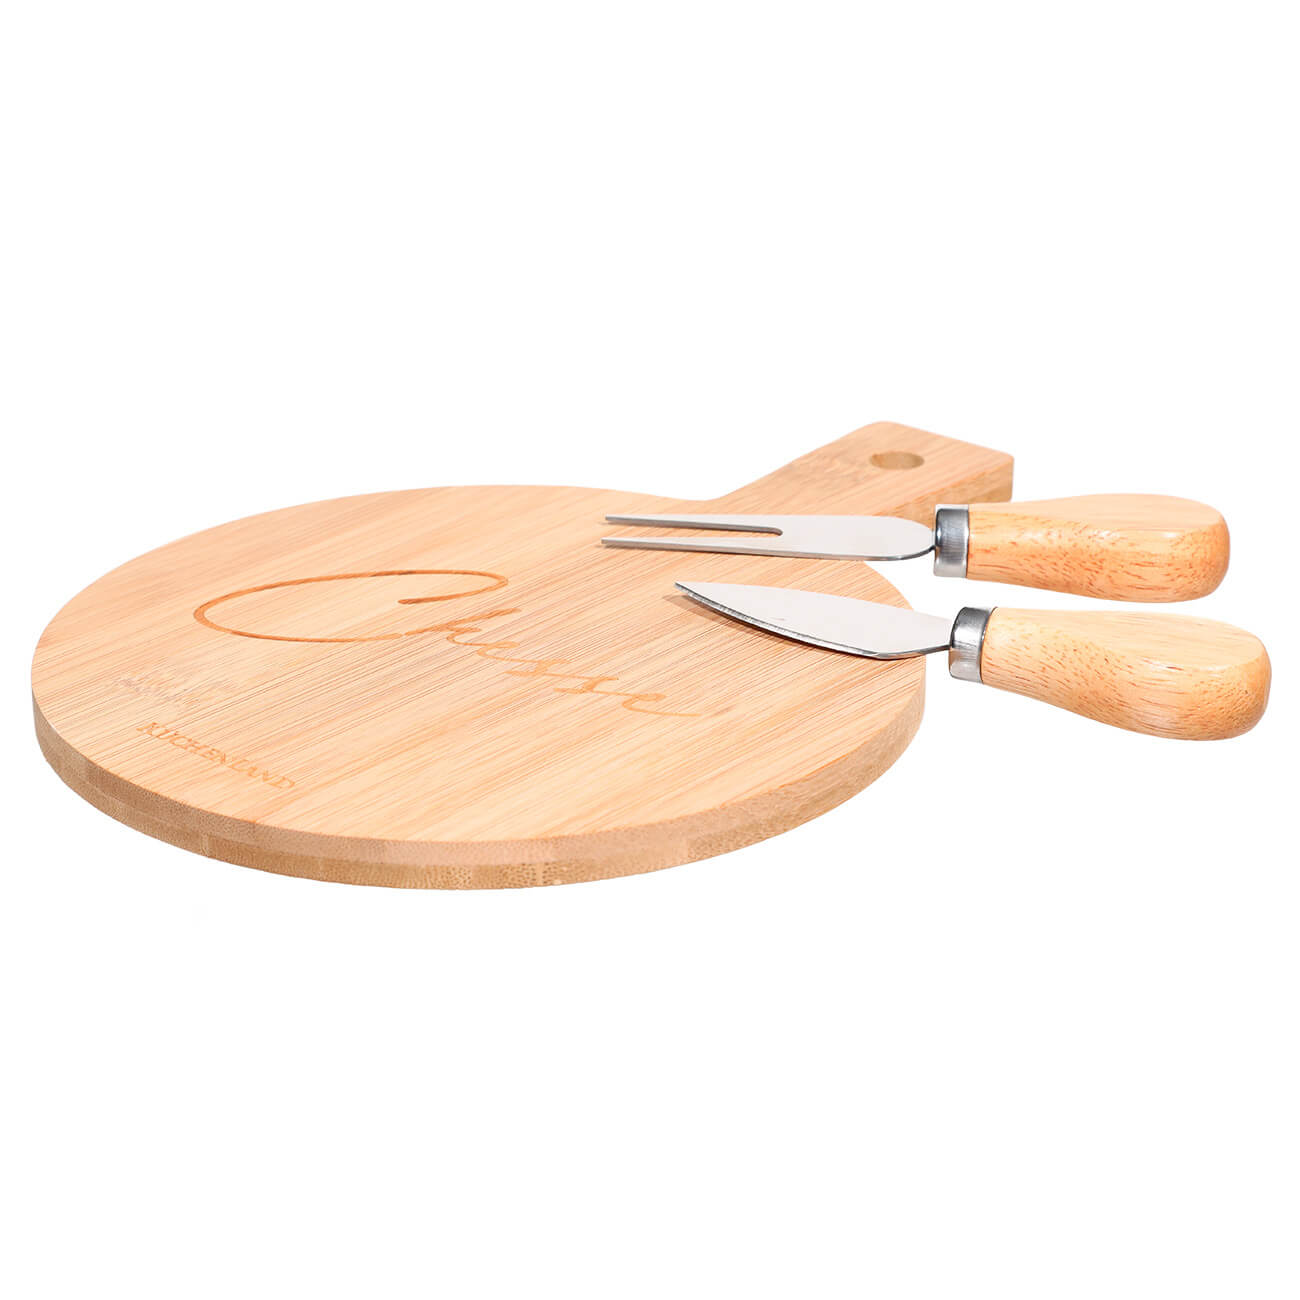 Набор для сыра, 3 пр, доска-блюдо с ручкой, бамбук/сталь, круглый, Cheese, Bamboo набор туриста 5в1 нож ложка вилка открывалка пилка